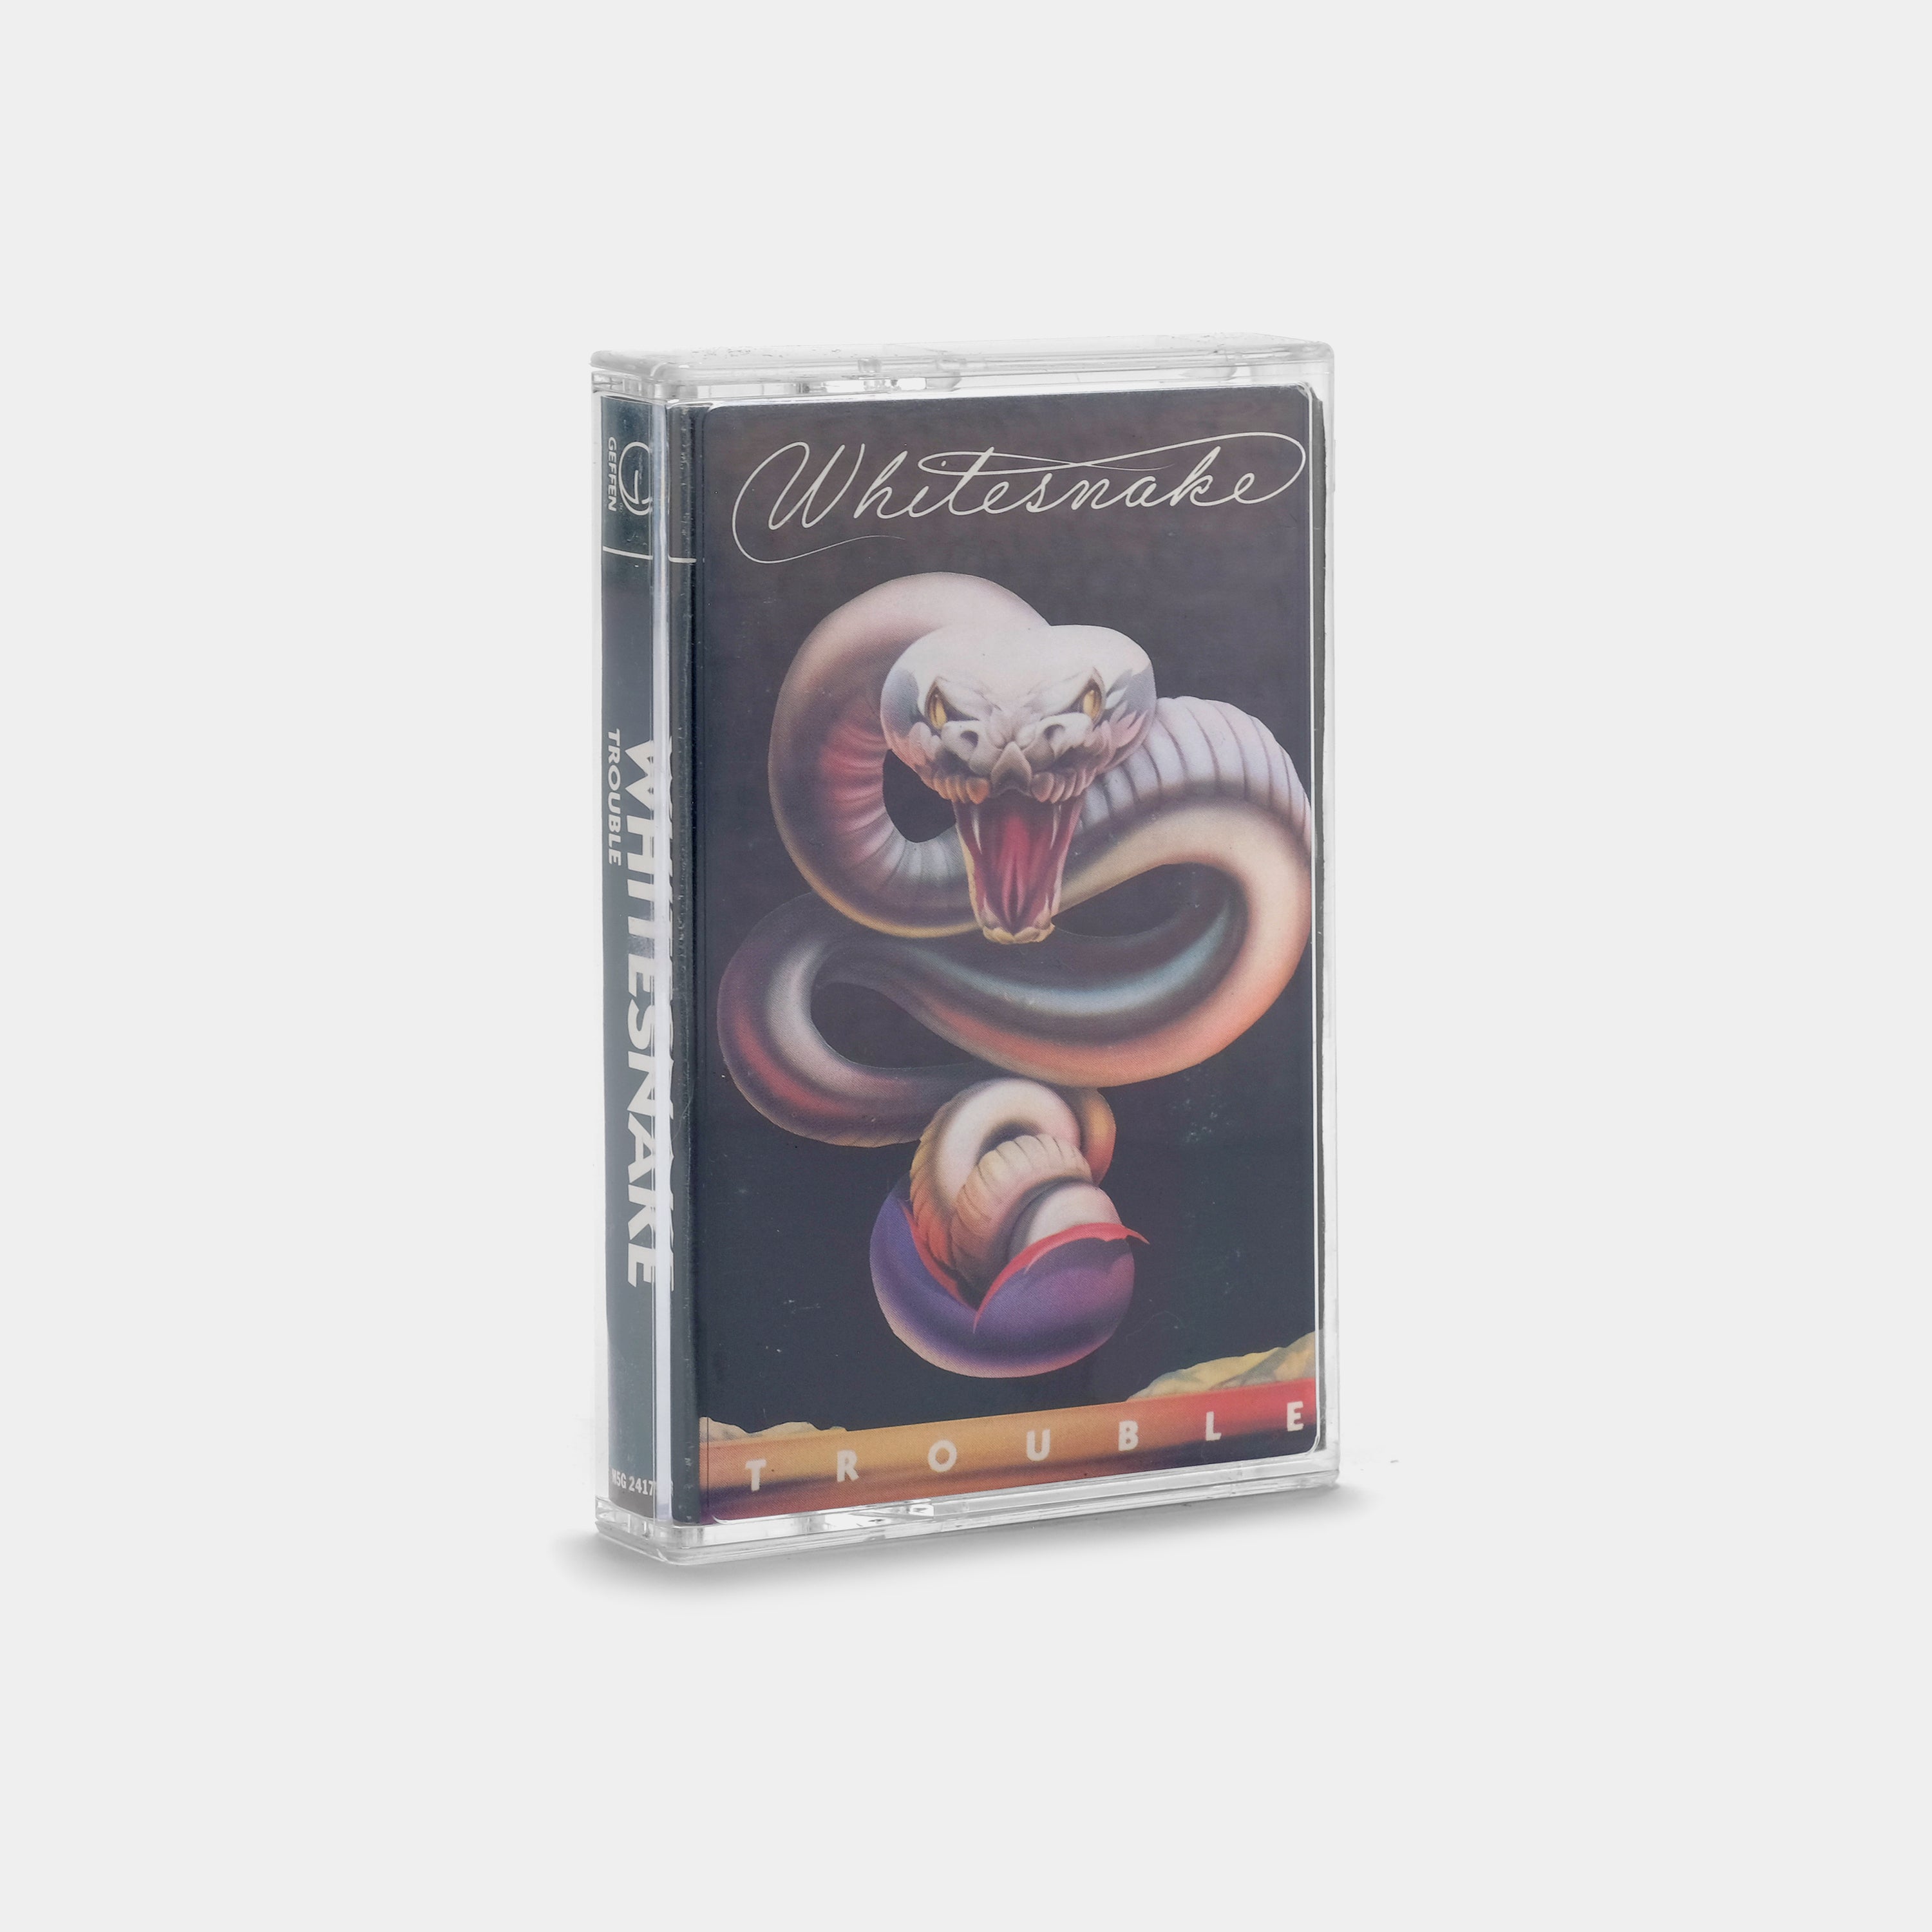 Whitesnake - Trouble Cassette Tape